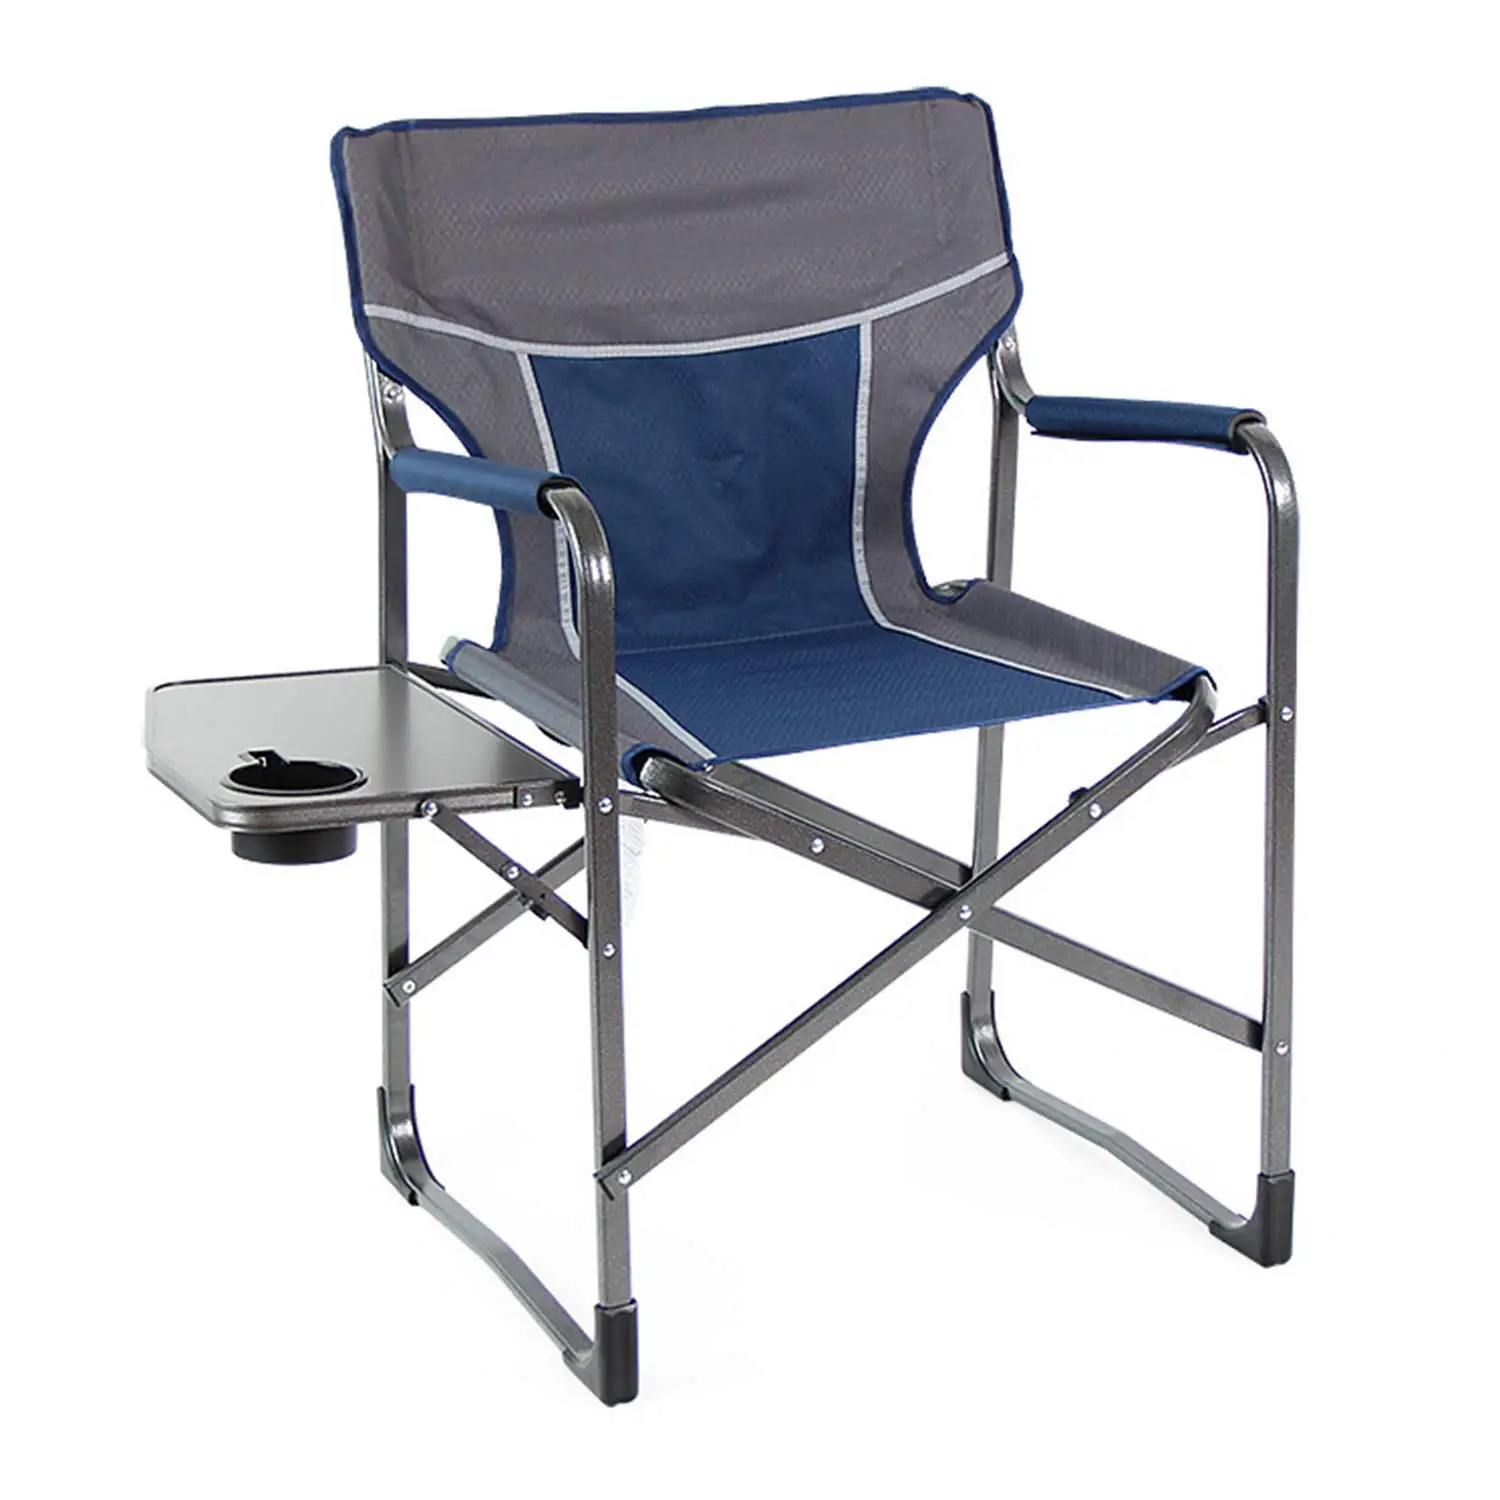 Алюминиевые складные стулья. Кресло кемпинговое Chair with Armrests Camping Chair бежевый р.one Size. Стул раскладной алюминиевый. Алюминиевый стул для рыбалки. Стул алюминиевый складной для рыбалки.